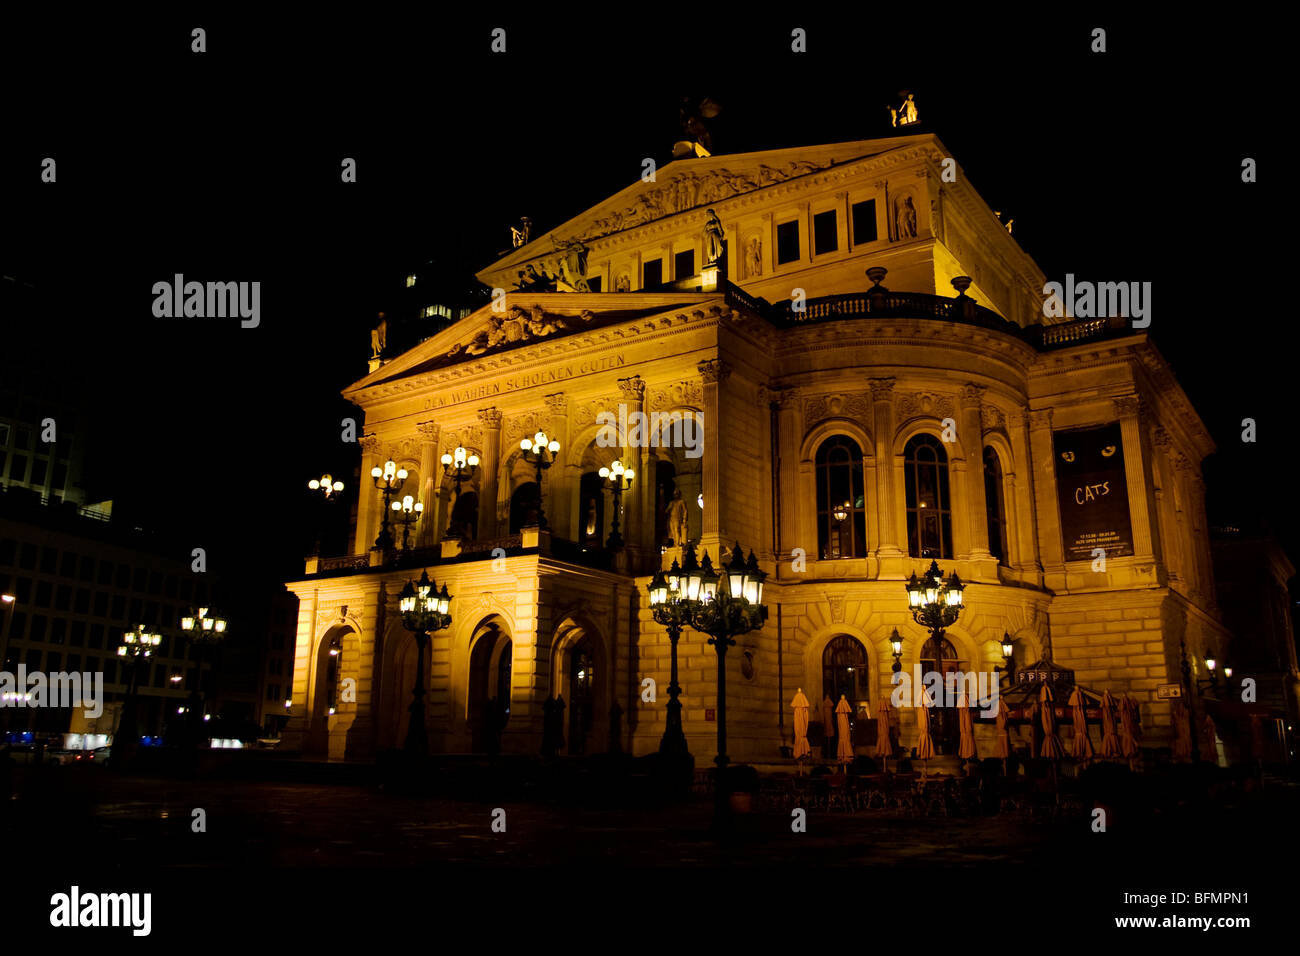 Die (Alte Oper) dans la région de Frankfurt am Main, Allemagne la nuit Banque D'Images